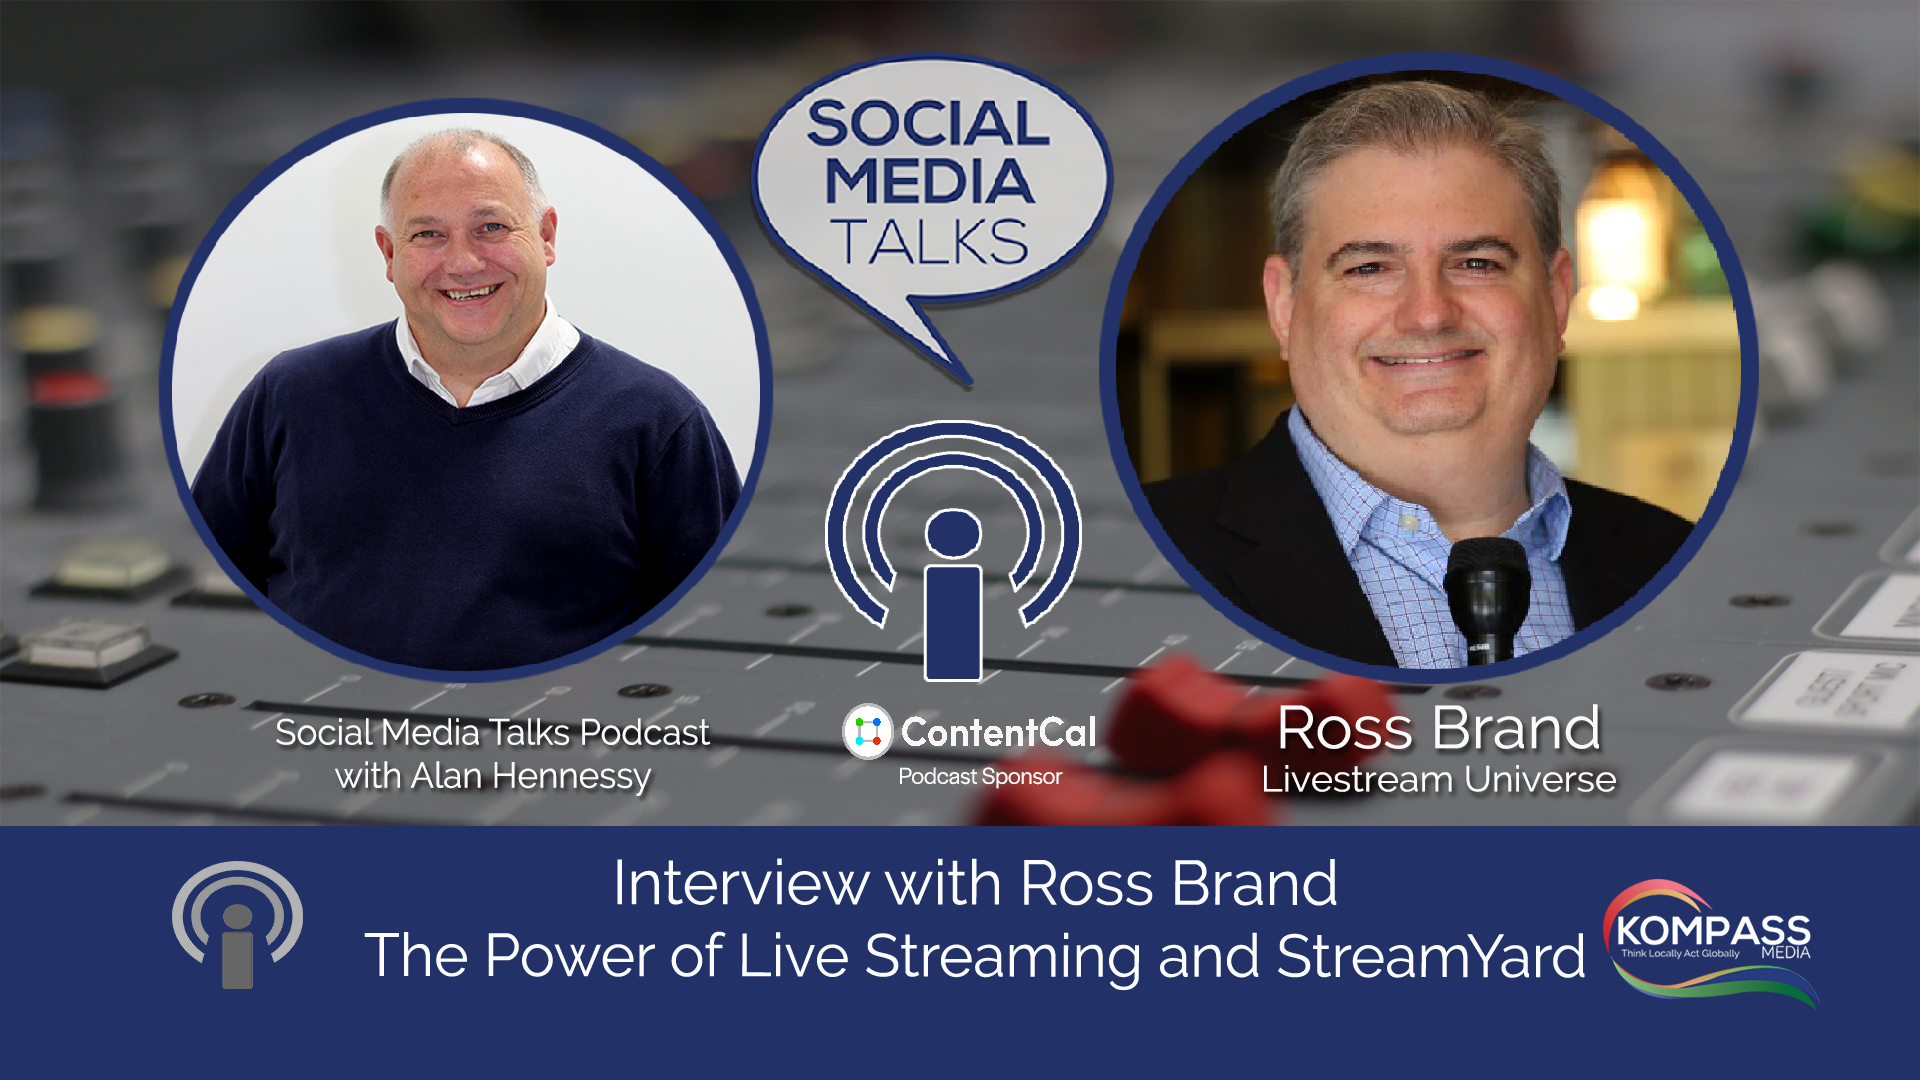 Ross Brand Livestream Universe Social Media Talks Guest